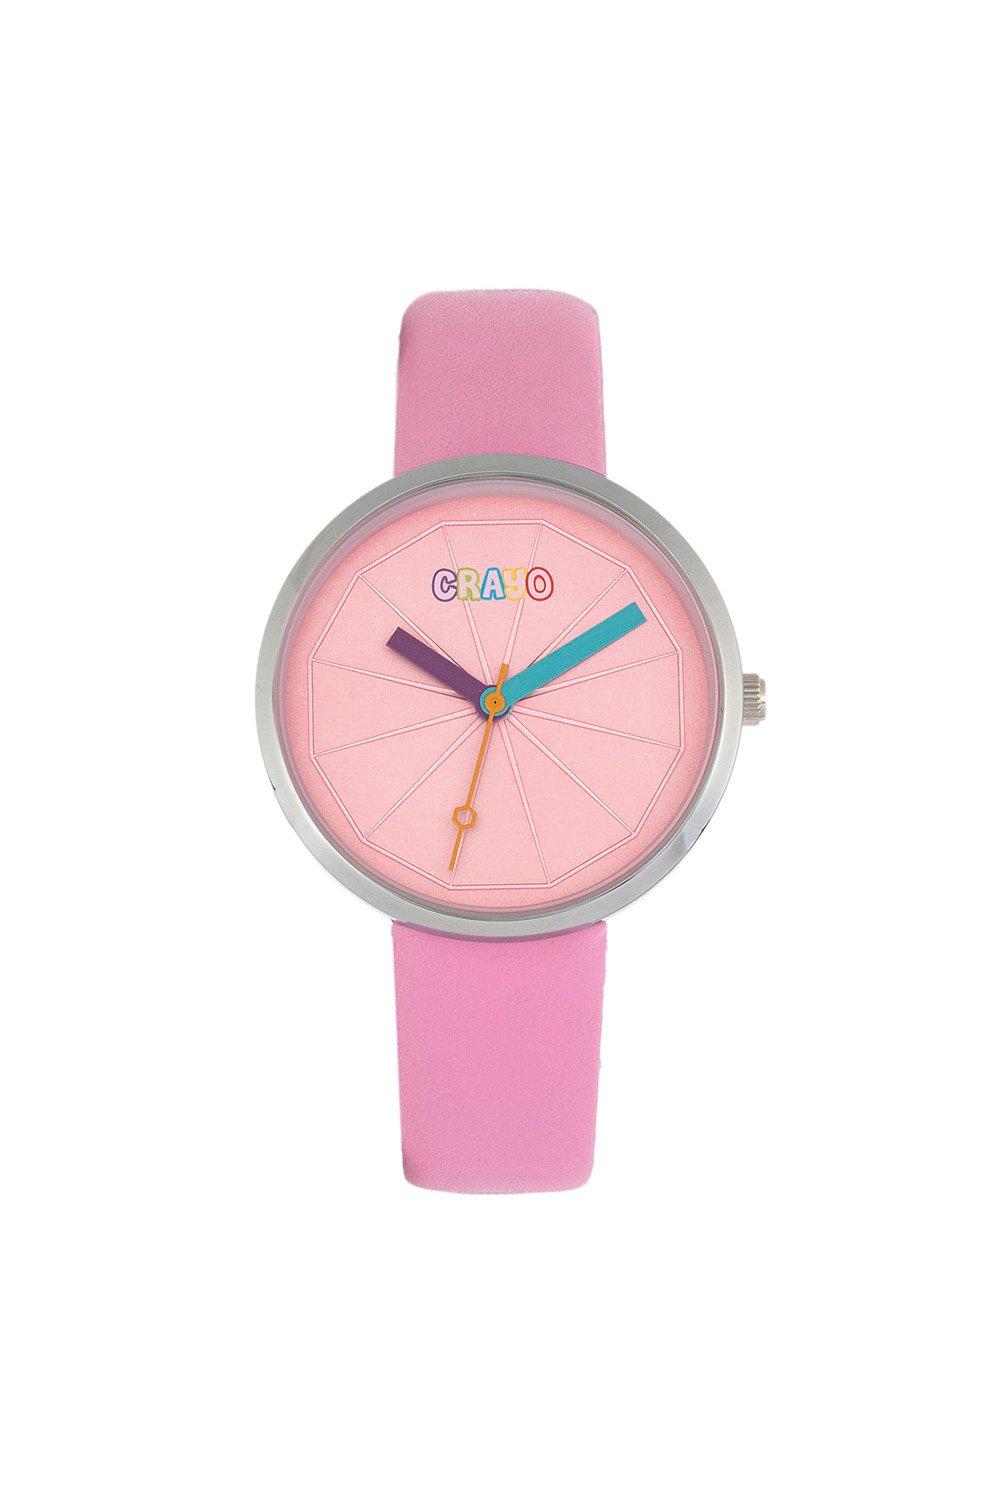 цена Метрические часы унисекс Crayo, розовый